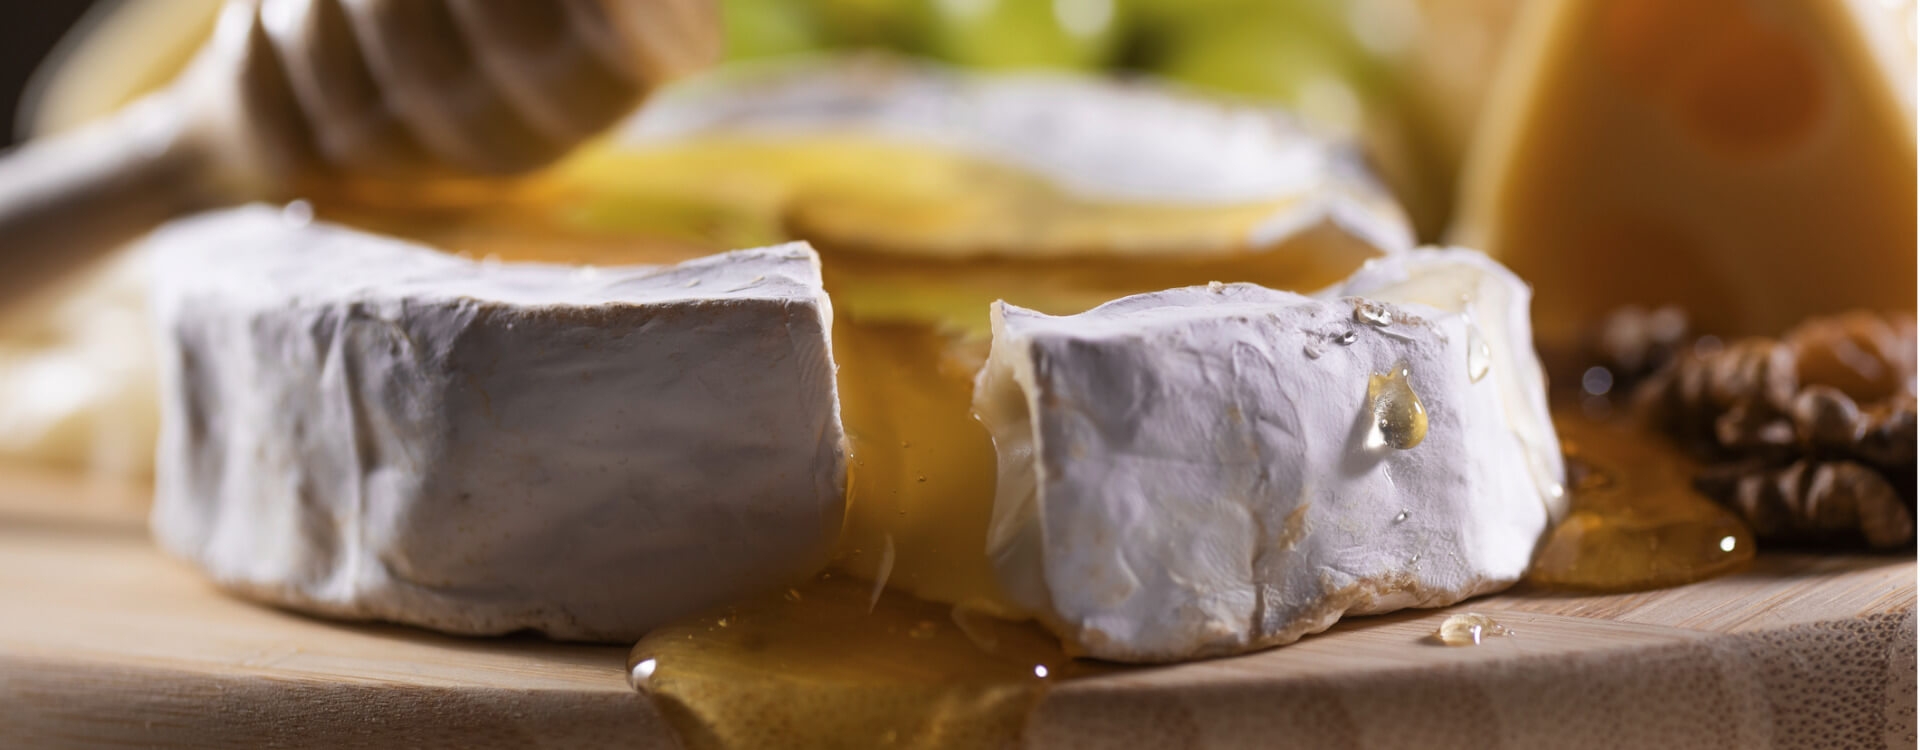 Miele italiano e formaggi: abbinamenti golosi